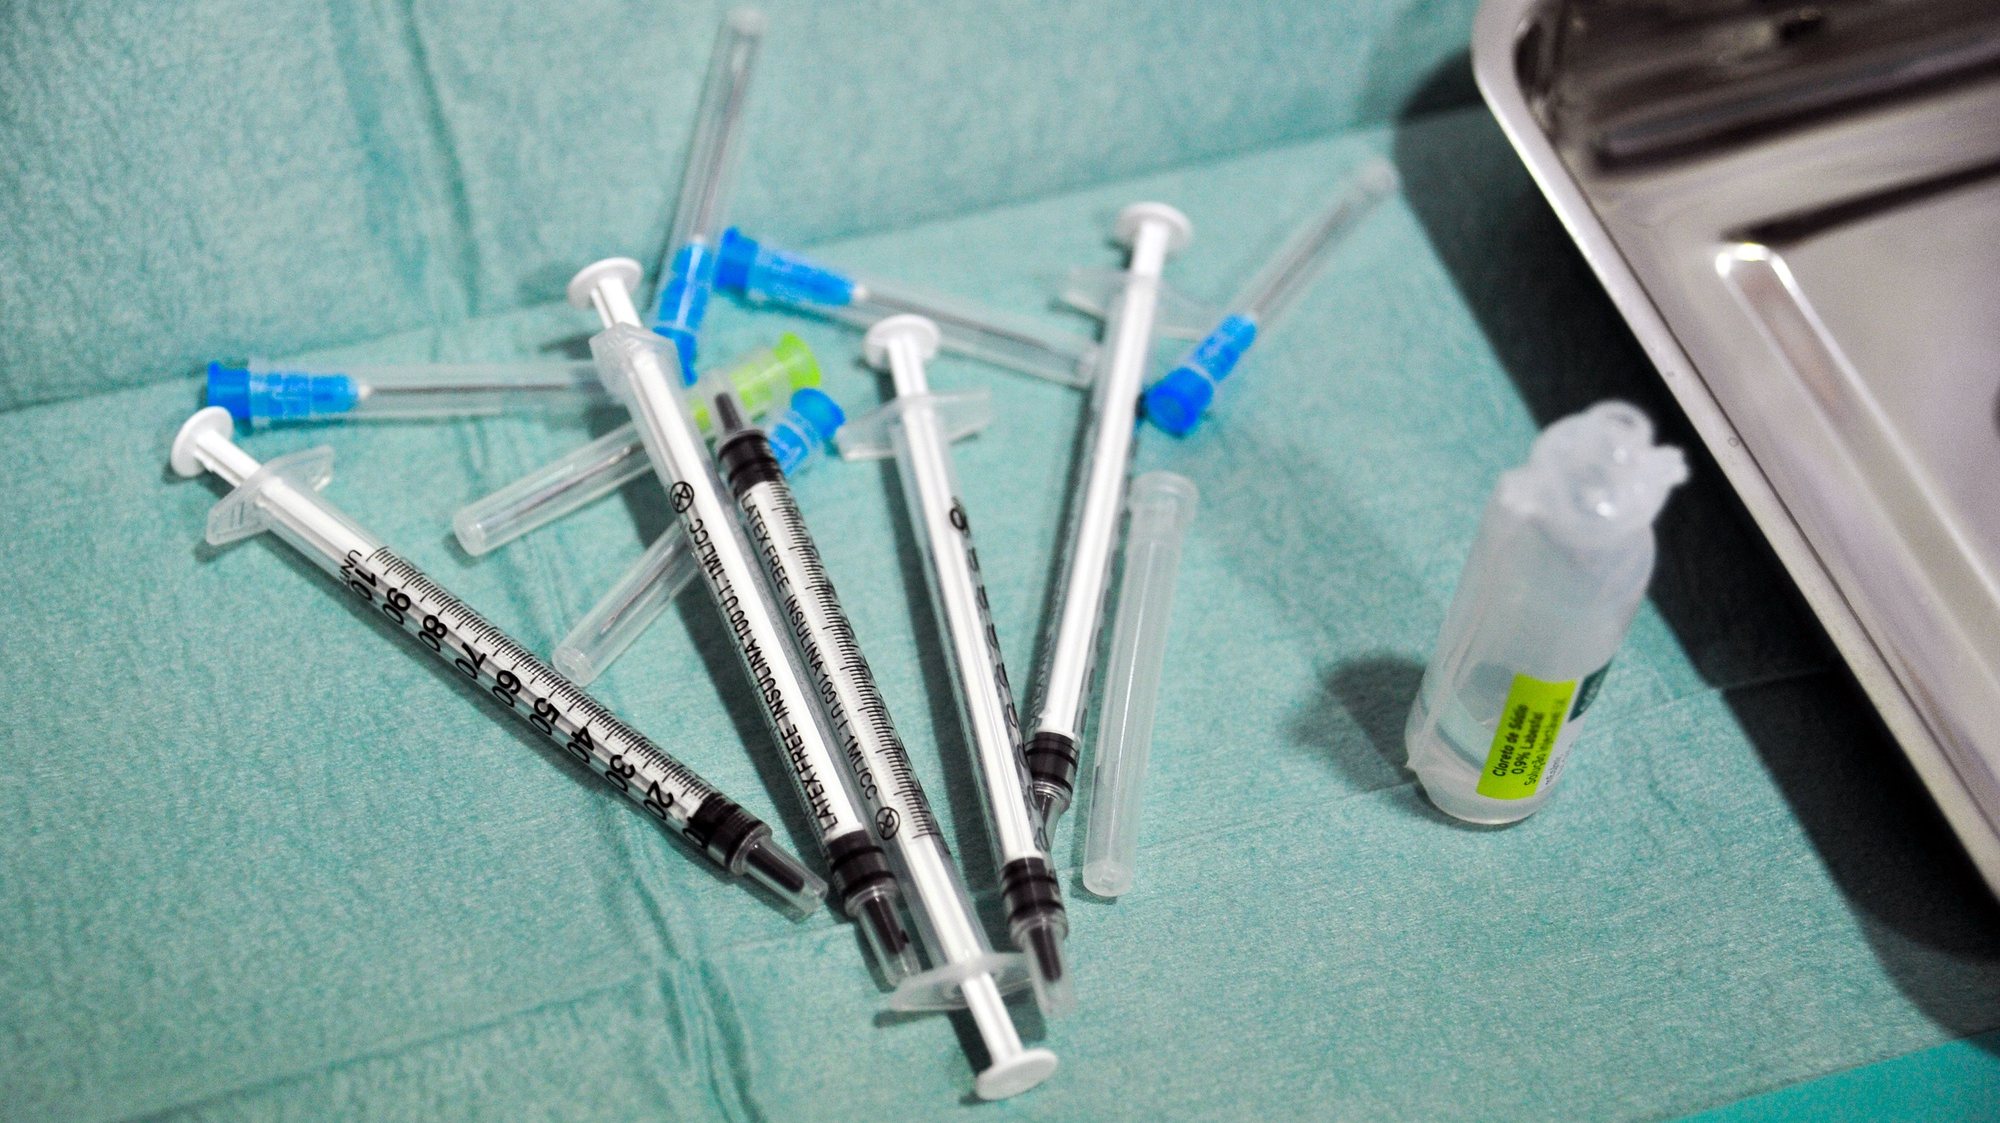 Início da vacinação dos profissionais da saúde do Centro da Saúde do Oeste com a vacina da Pfizer-BioNTech contra a covid-19, na unidade do Centro de Saúde das Caldas da Rainha, 29 de dezembro de 2020. CARLOS BARROSO/LUSA